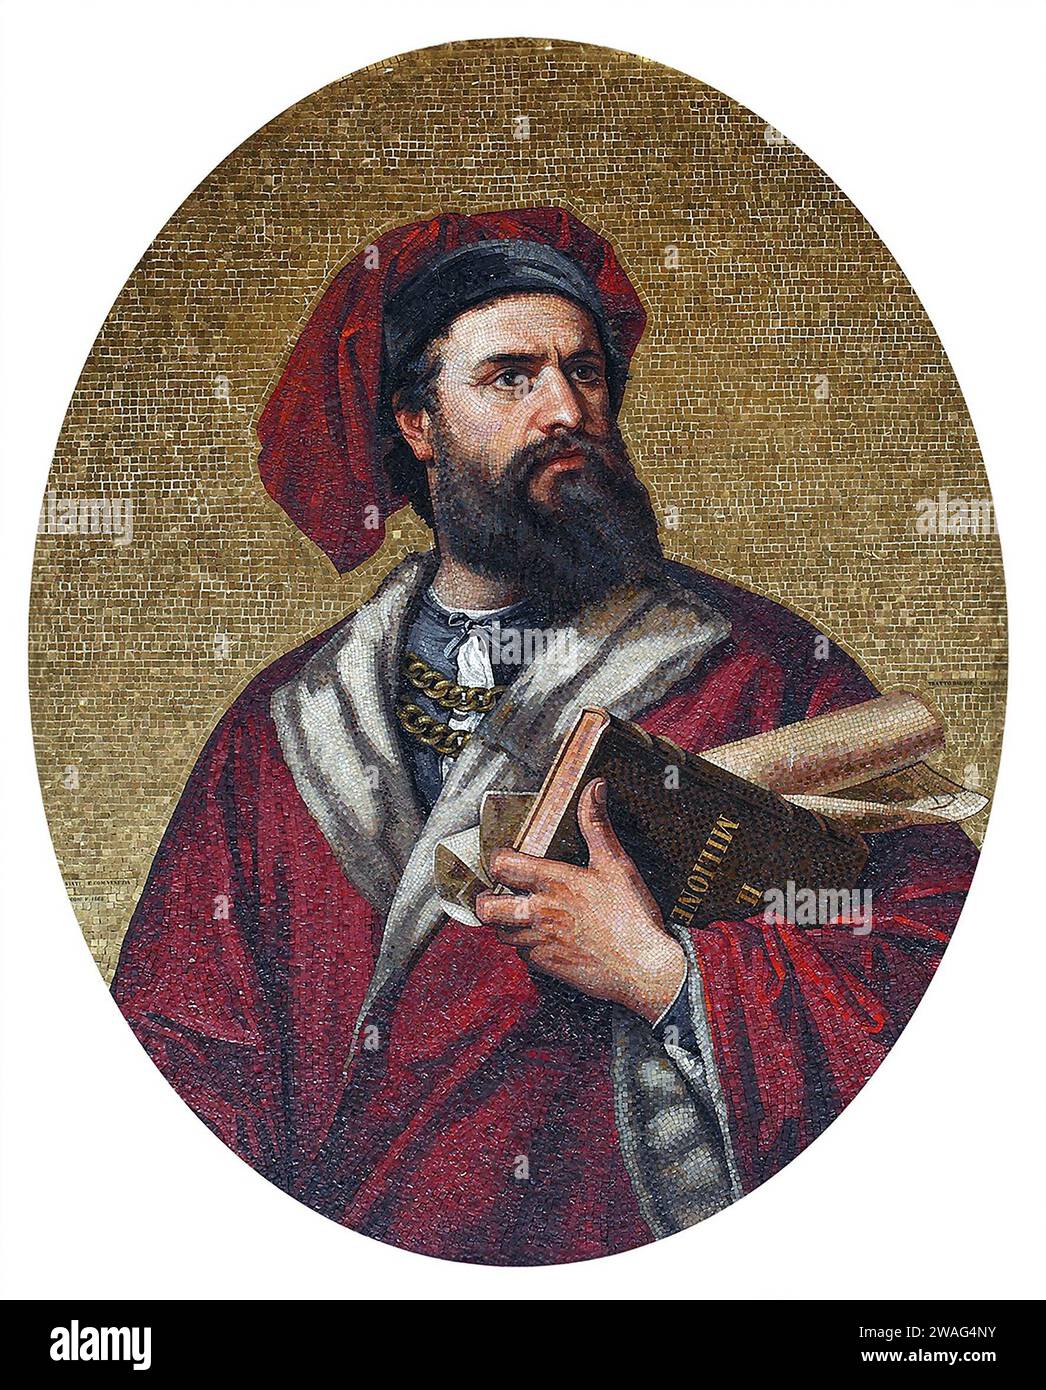 Marco Polo. Retrato del comerciante y explorador veneciano, Marco Polo (c. 1254-1324), mosaico en el Palacio Municipal de Génova, 1867 Foto de stock